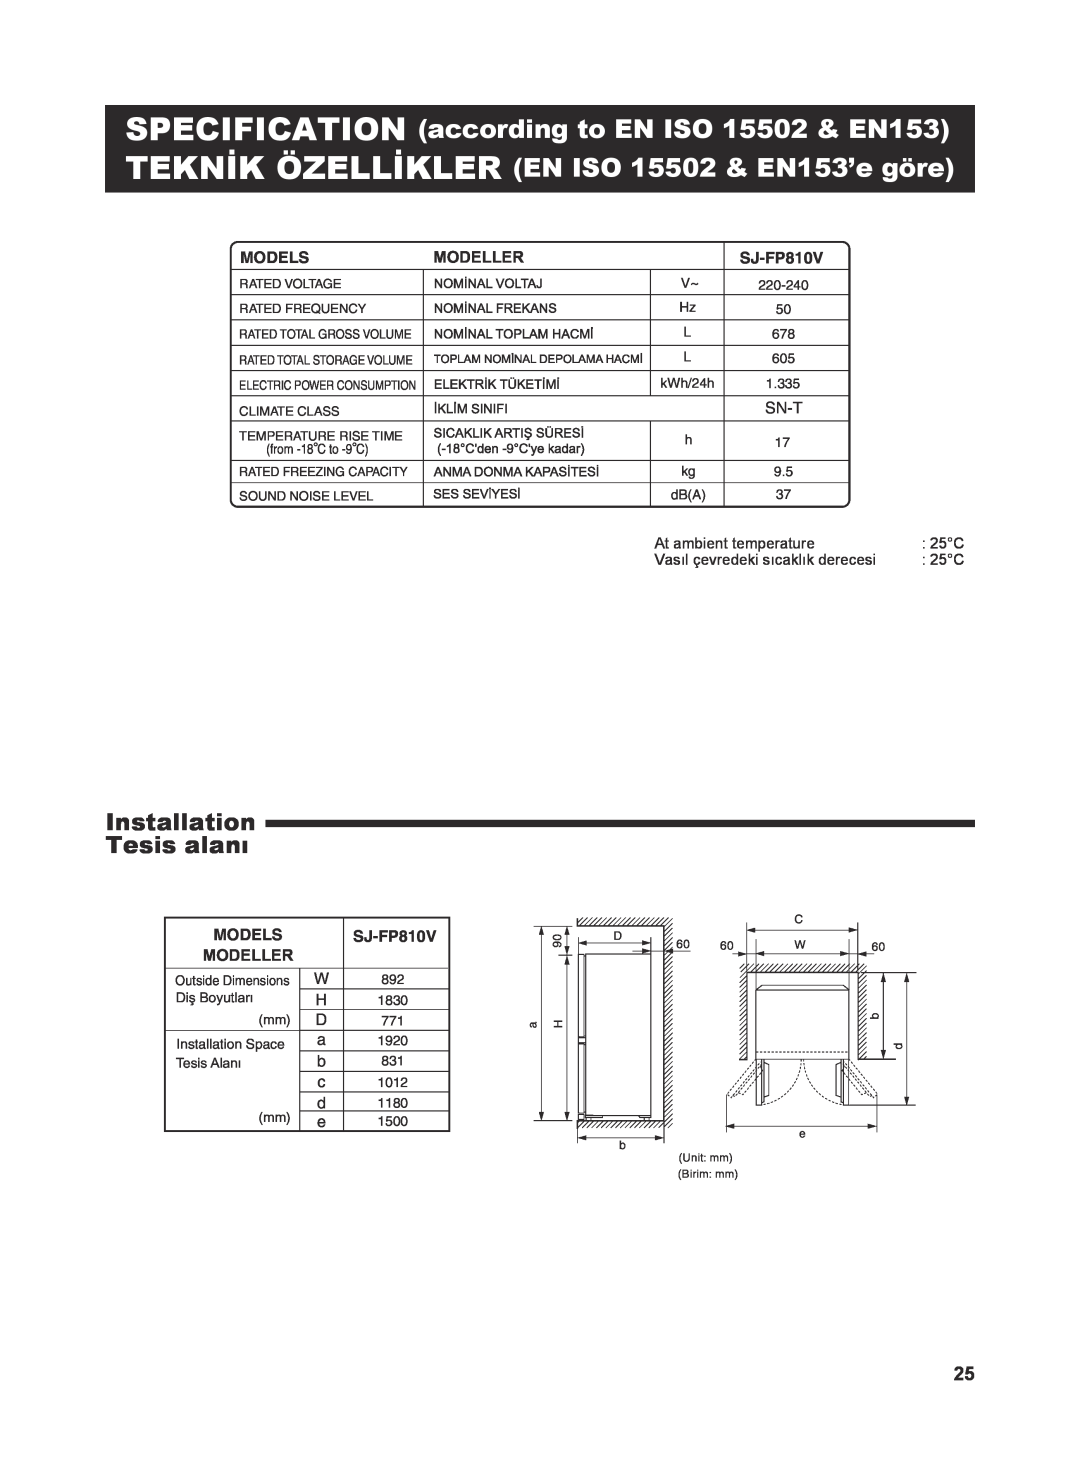 Sharp SJ-FP810V operation manual Installation Tesis alanı, Models, Sn-T 